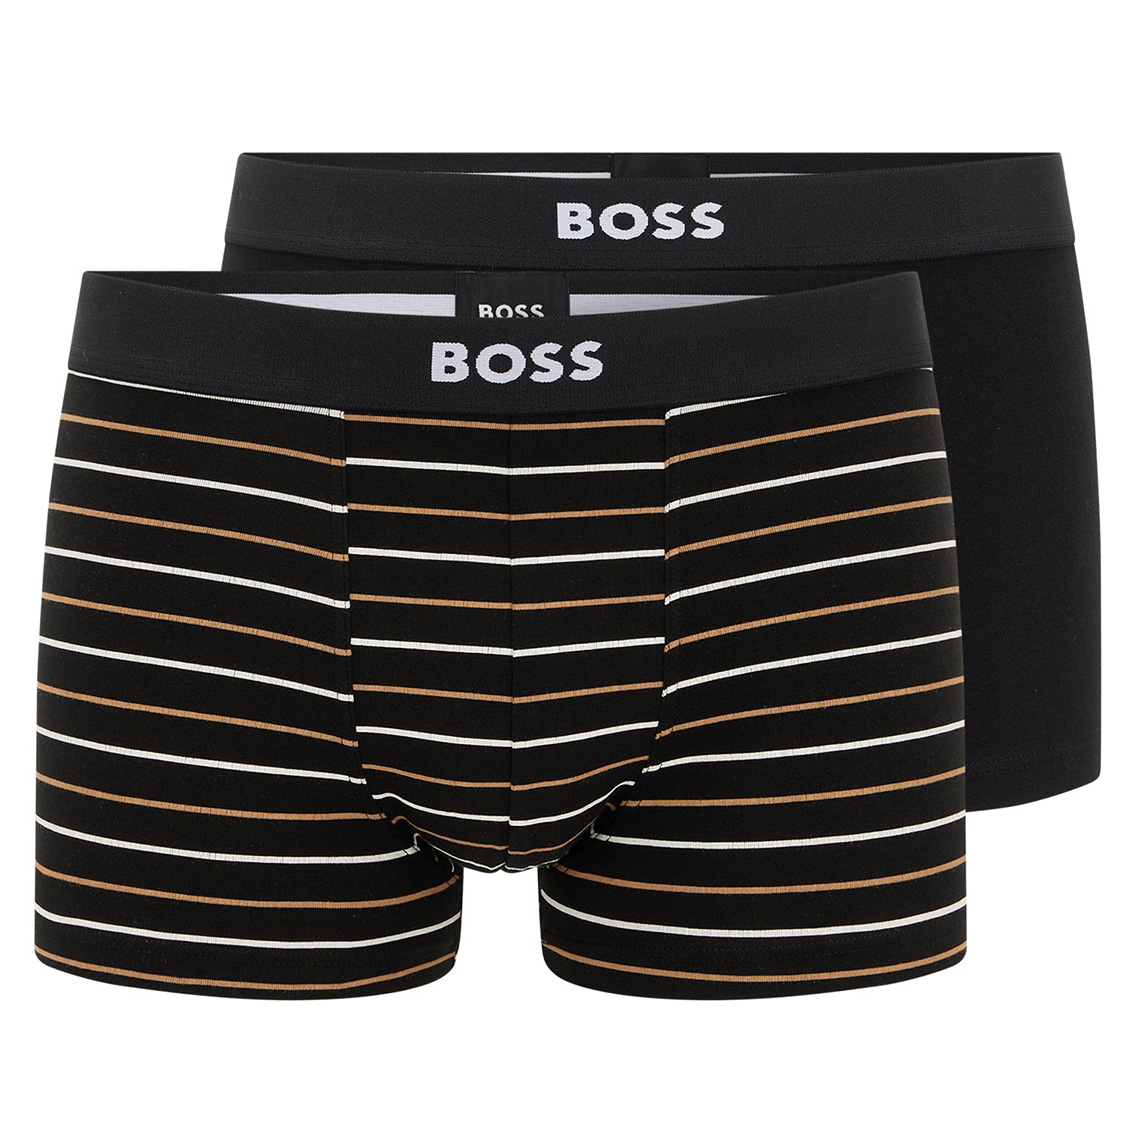 [50479116-002] HUGO BOSS ヒューゴボス ボクサーパンツ メンズ アンダーウェア インナー 男性 下着 ブランド おすすめ 人気 プレゼント